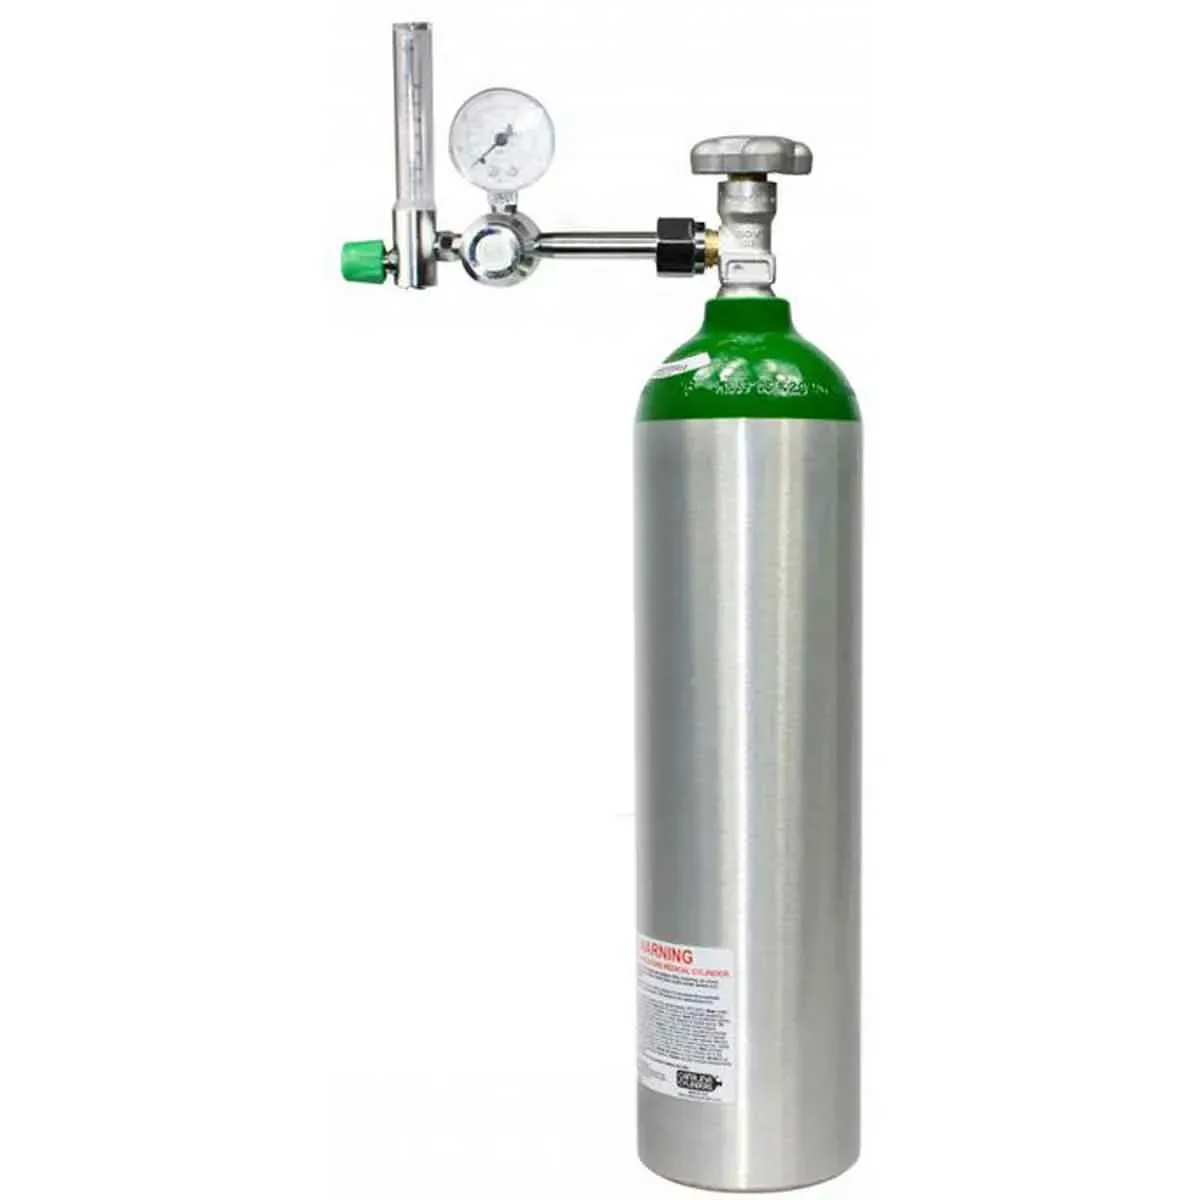 Um cilindro contendo gás oxigênio, normalmente usado para mergulhos, aplicações industriais, usos hospitalares entre muitos outros locais.